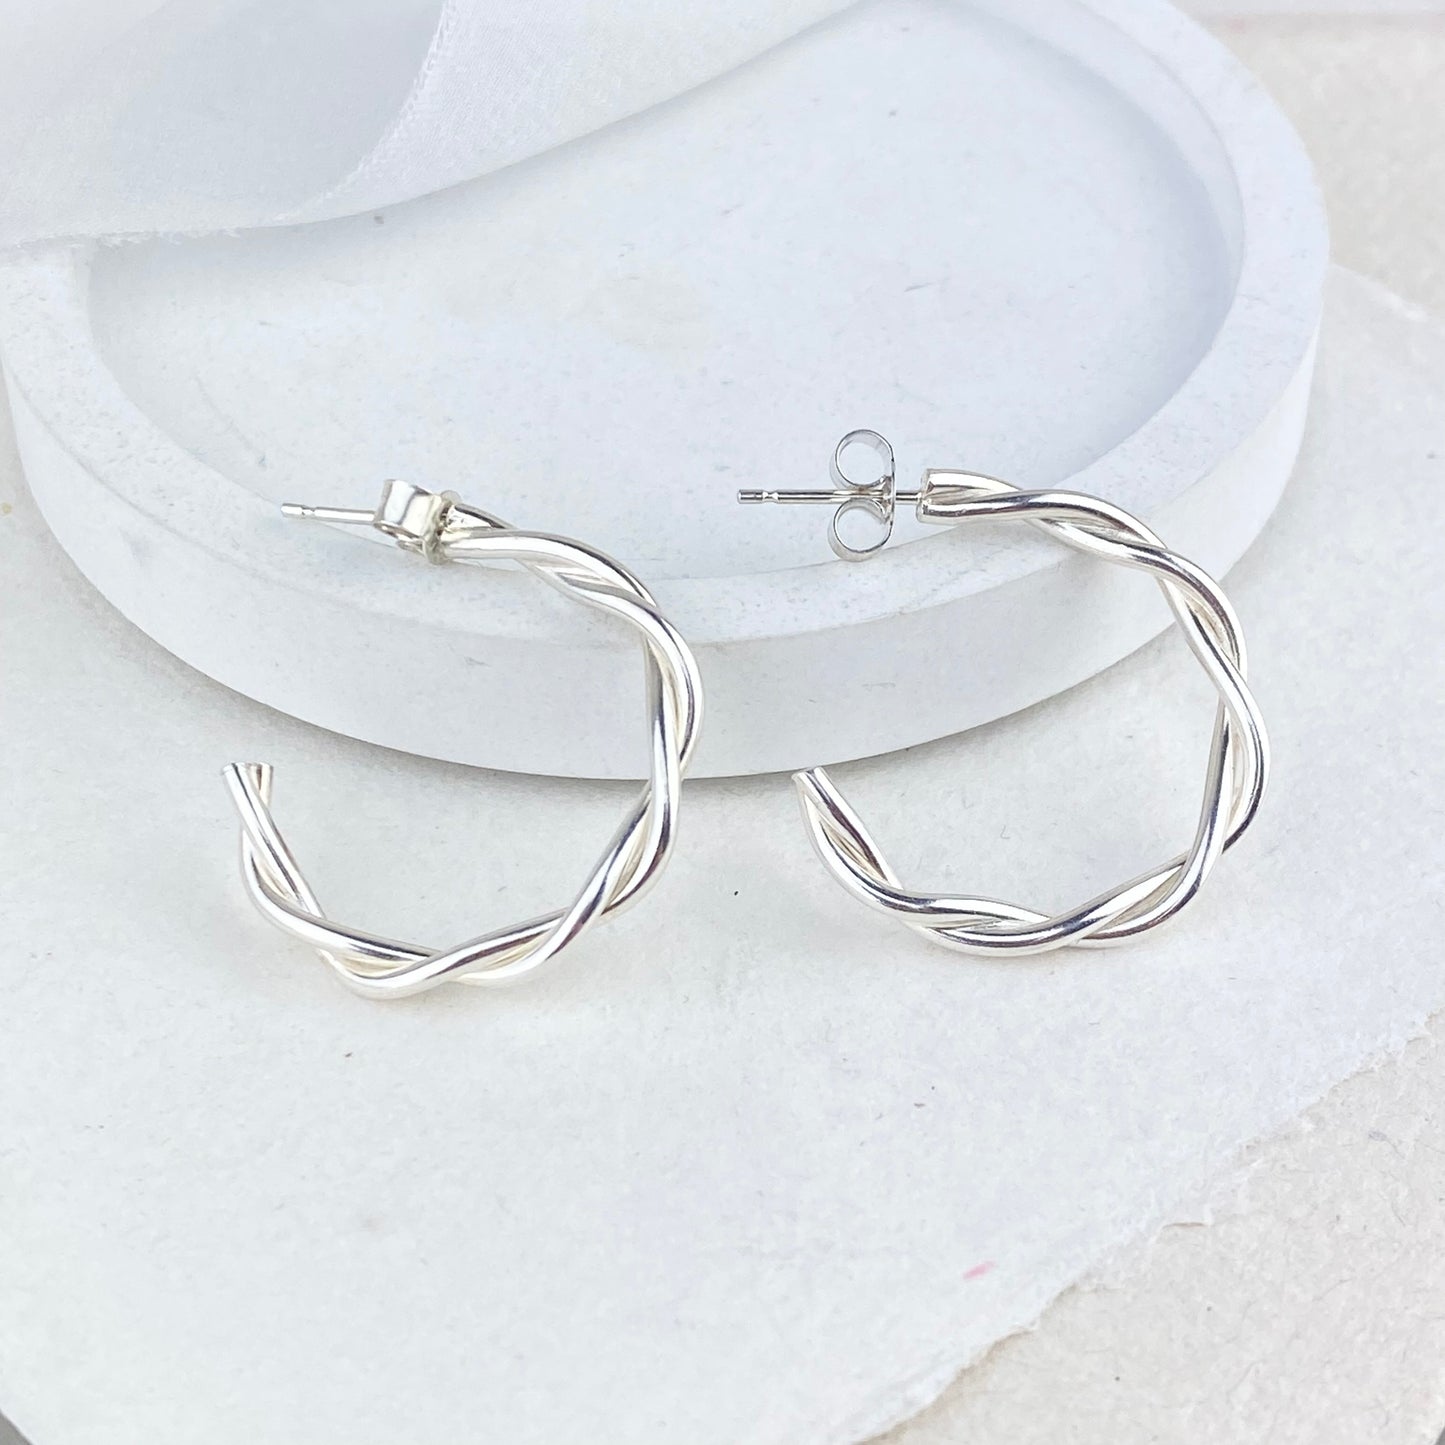 The Farthing Twisted Hoop Earrings - sterling silver twisted stud hoops